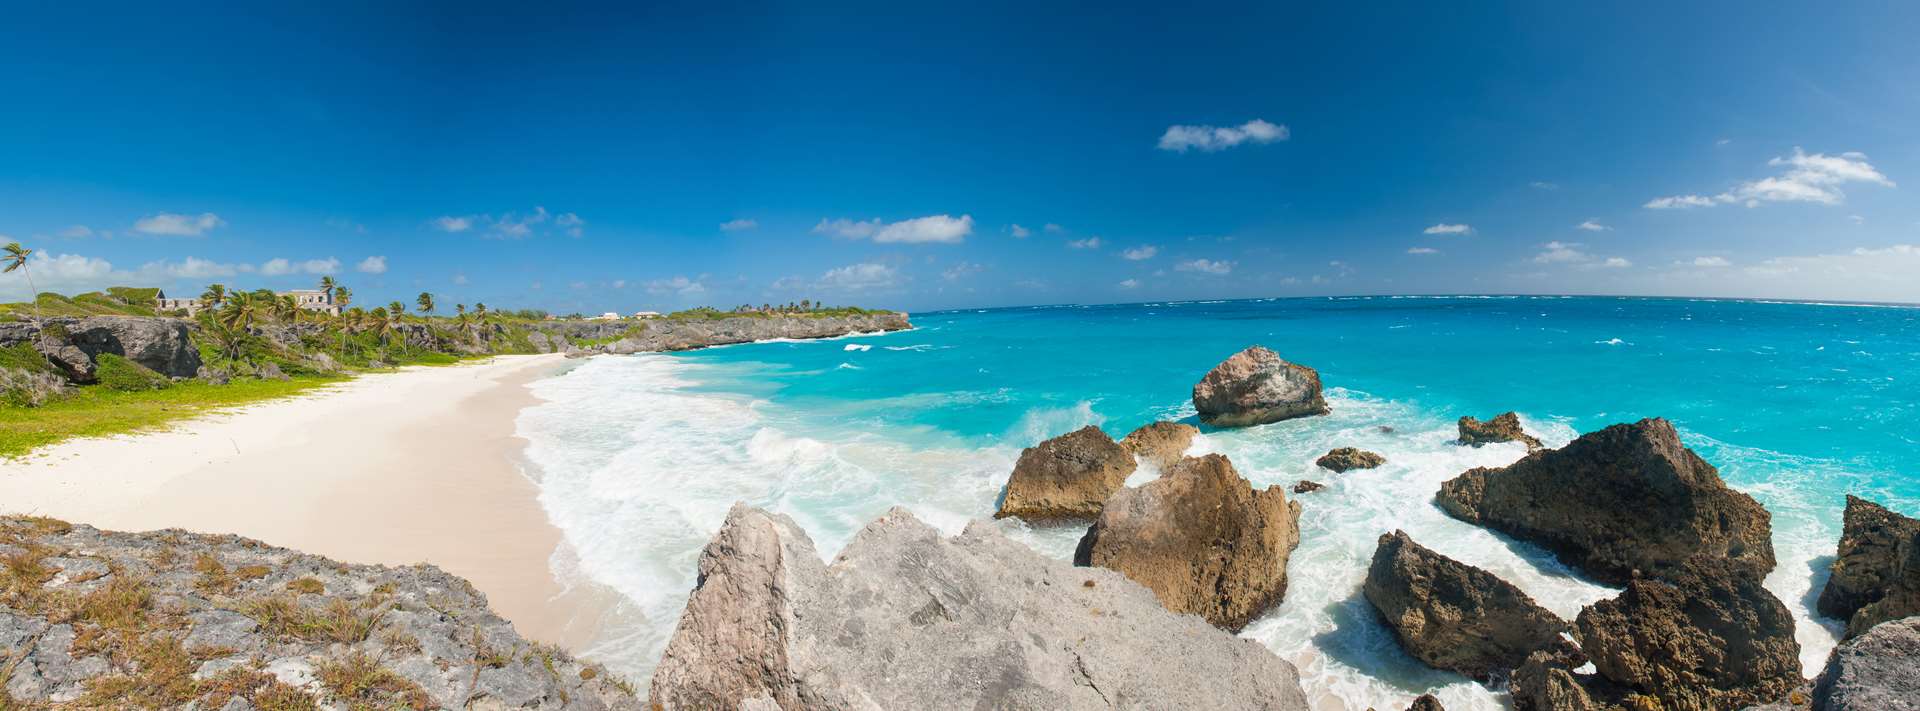 Holidays to Barbados 2023 / 2024